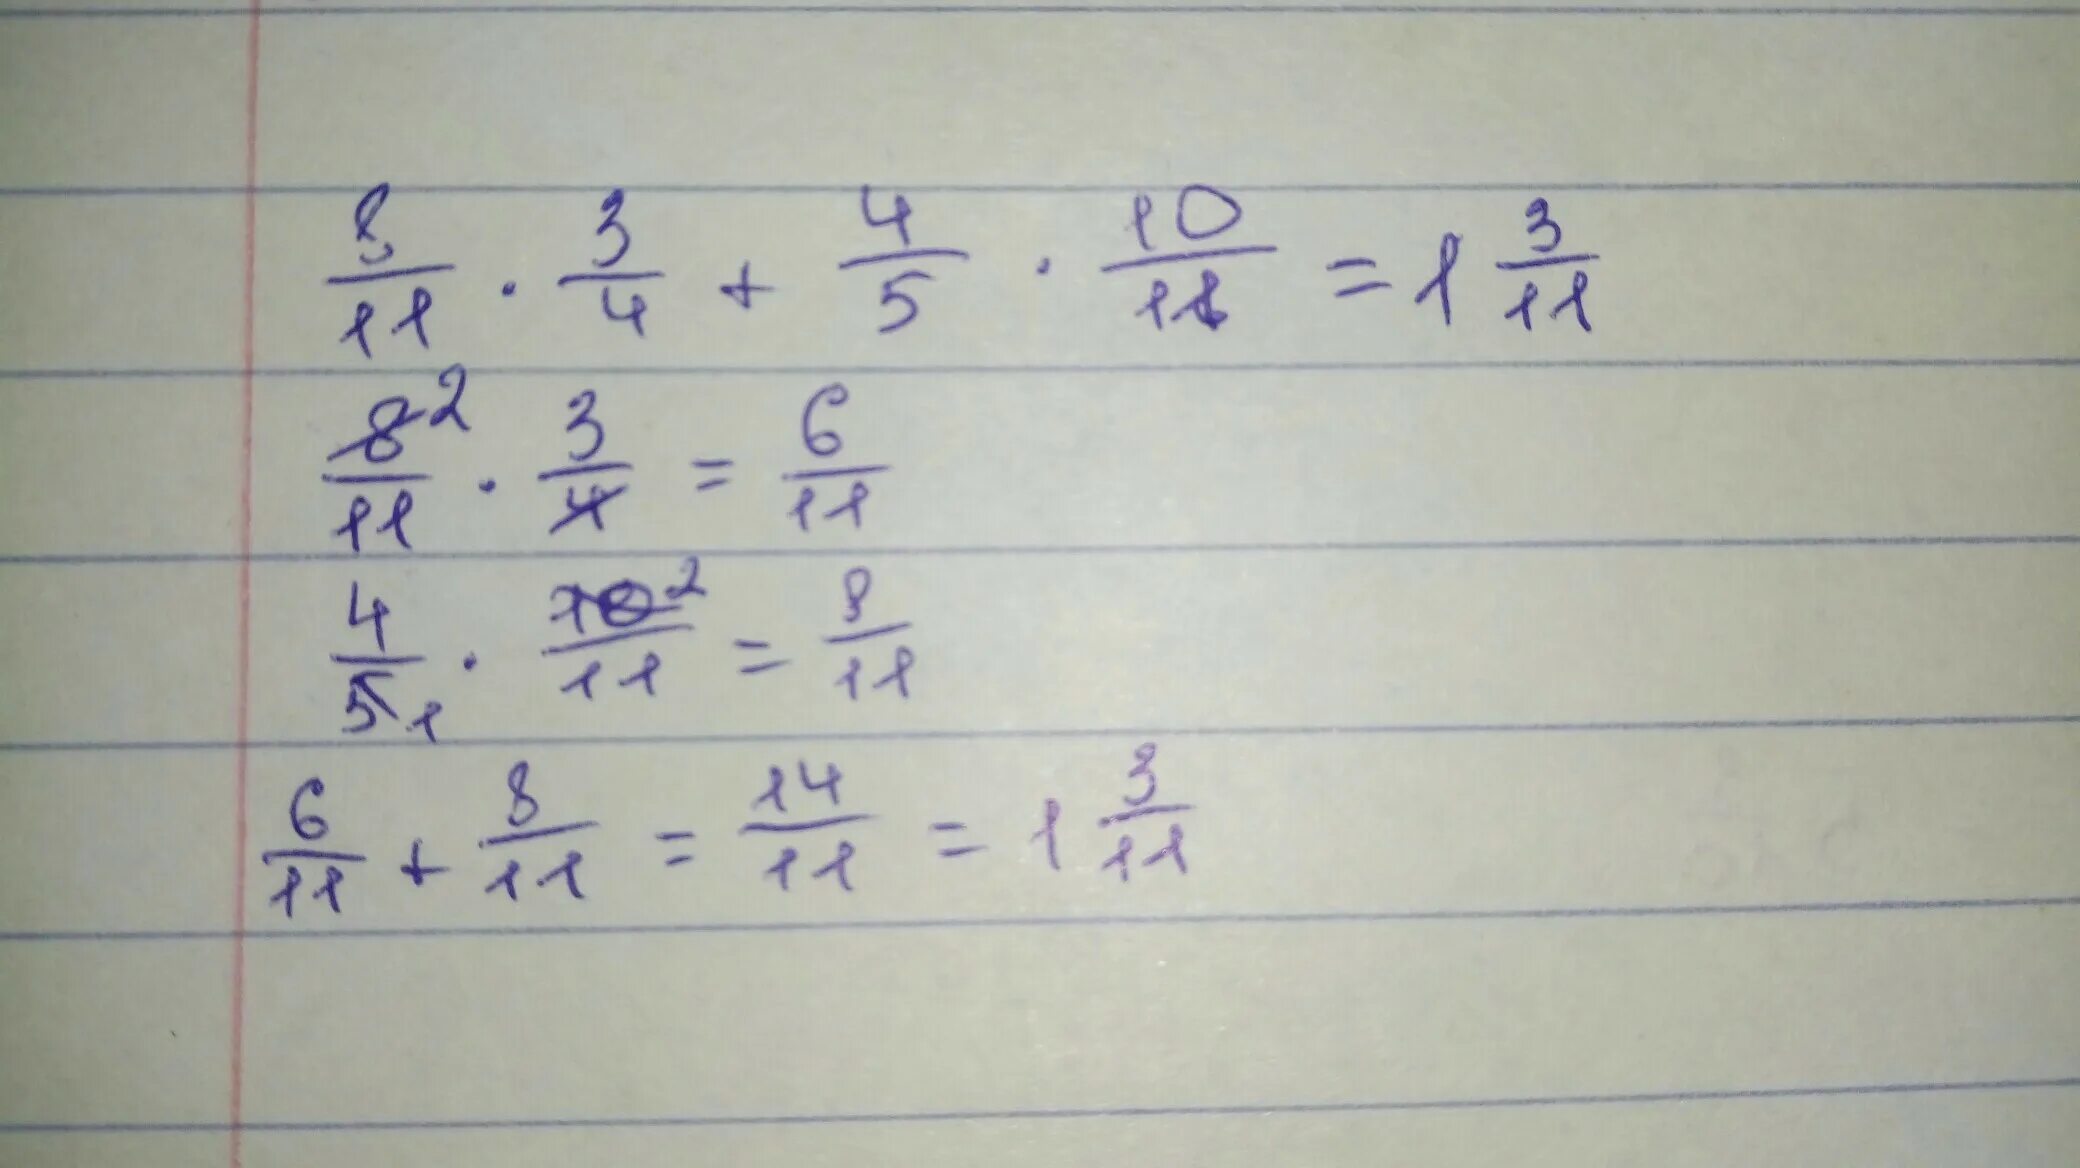 Найдите значение числового выражения 10-4 4/5. Найдите значение числового выражения удобным способом 8/11*3/4+4/5*10/11. Найдите значимое числовое выражение 7/12*6/11+1/8:11/6. Найдите значение числового выражения: 1. (4^3*3^10)/6^10 =.